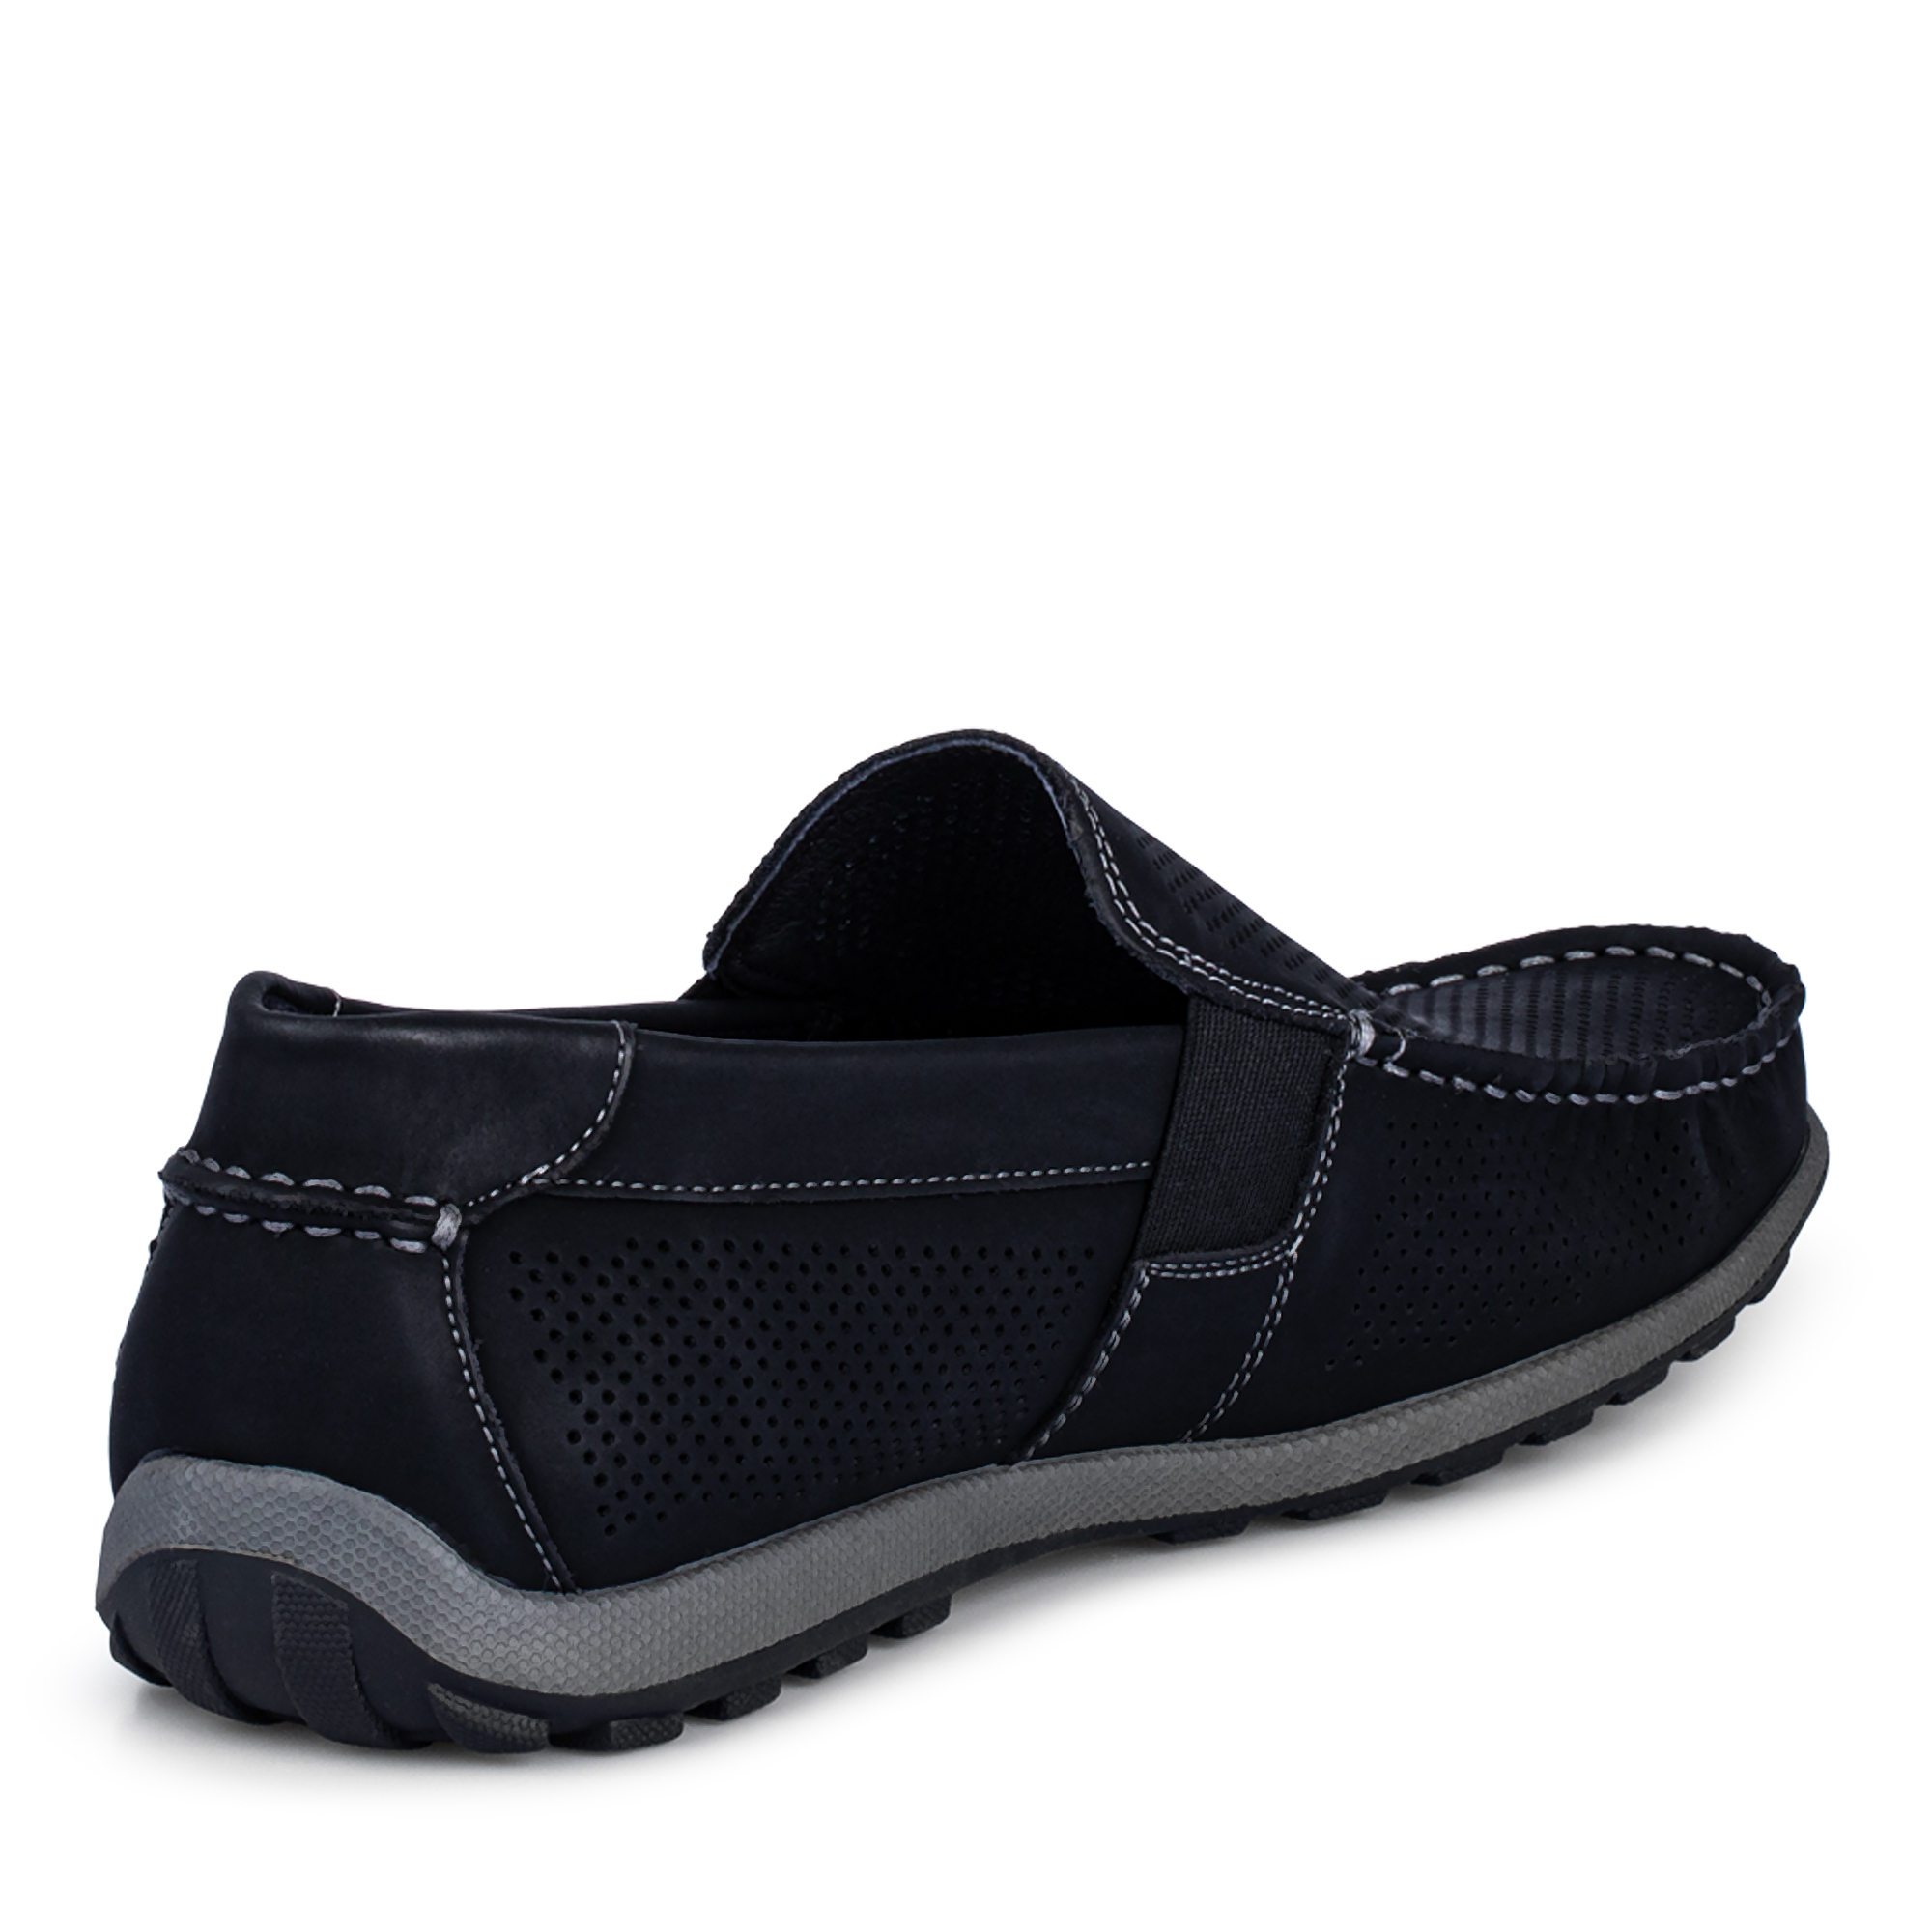 Туфли/полуботинки Thomas Munz 058-124C-1602, цвет черный, размер 41 - фото 3